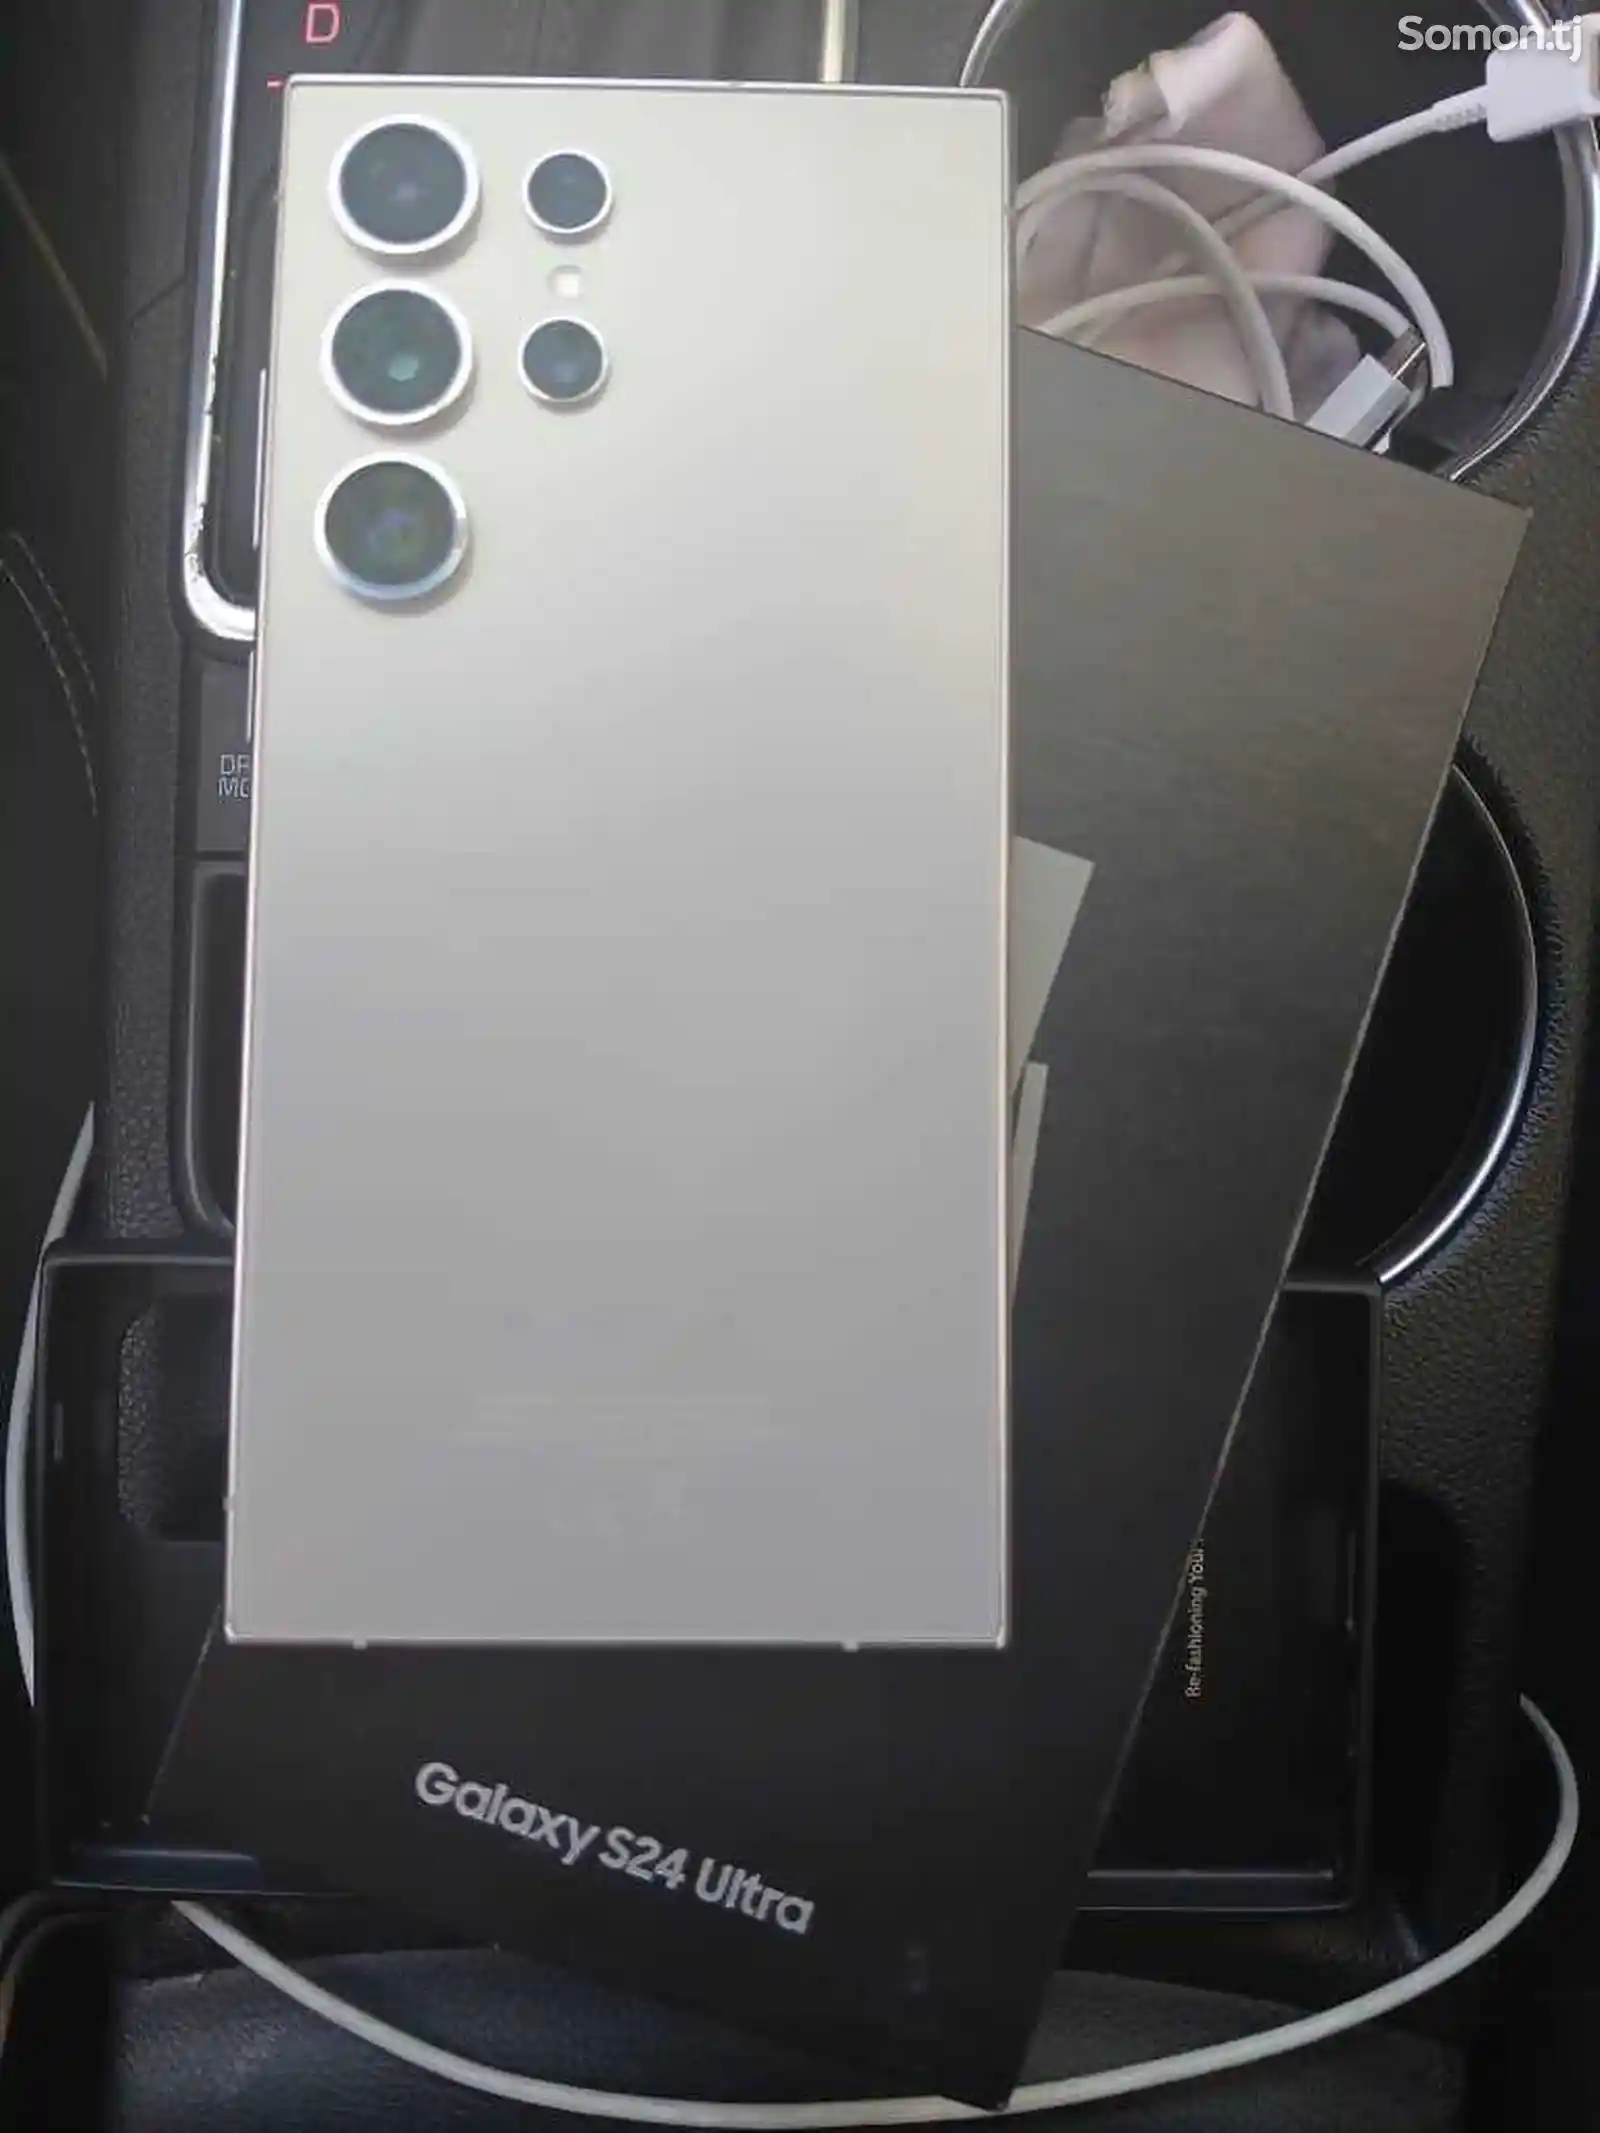 Samsung Galaxy S24 ultra-1